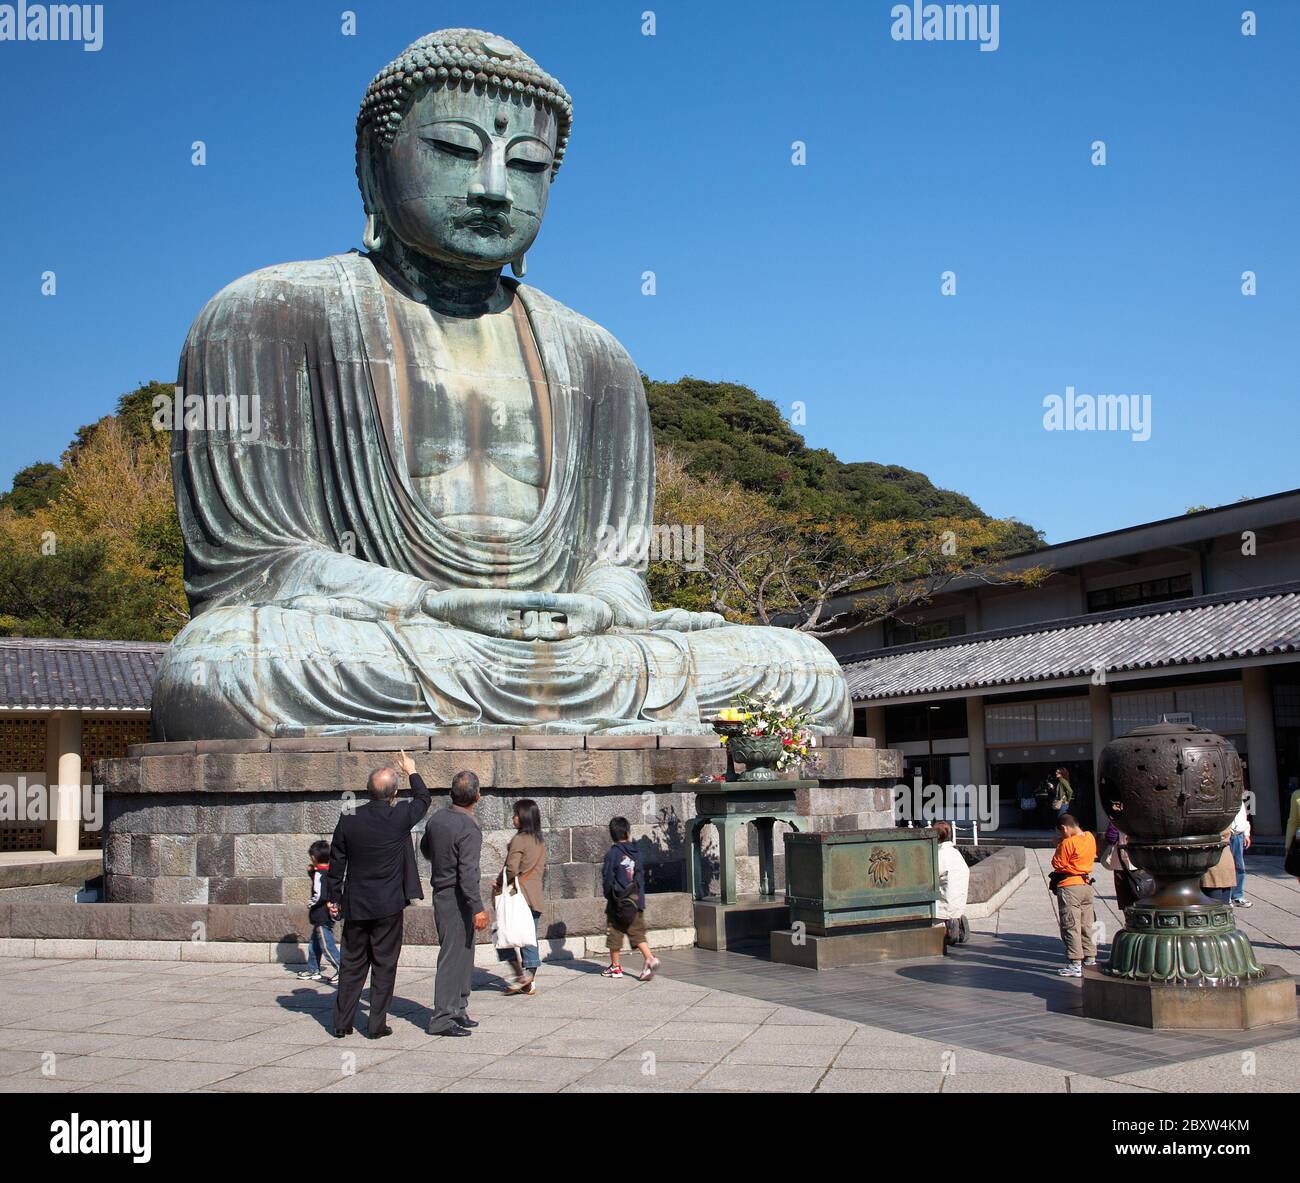 Great Buddha statue in Kamakura Stock Photo